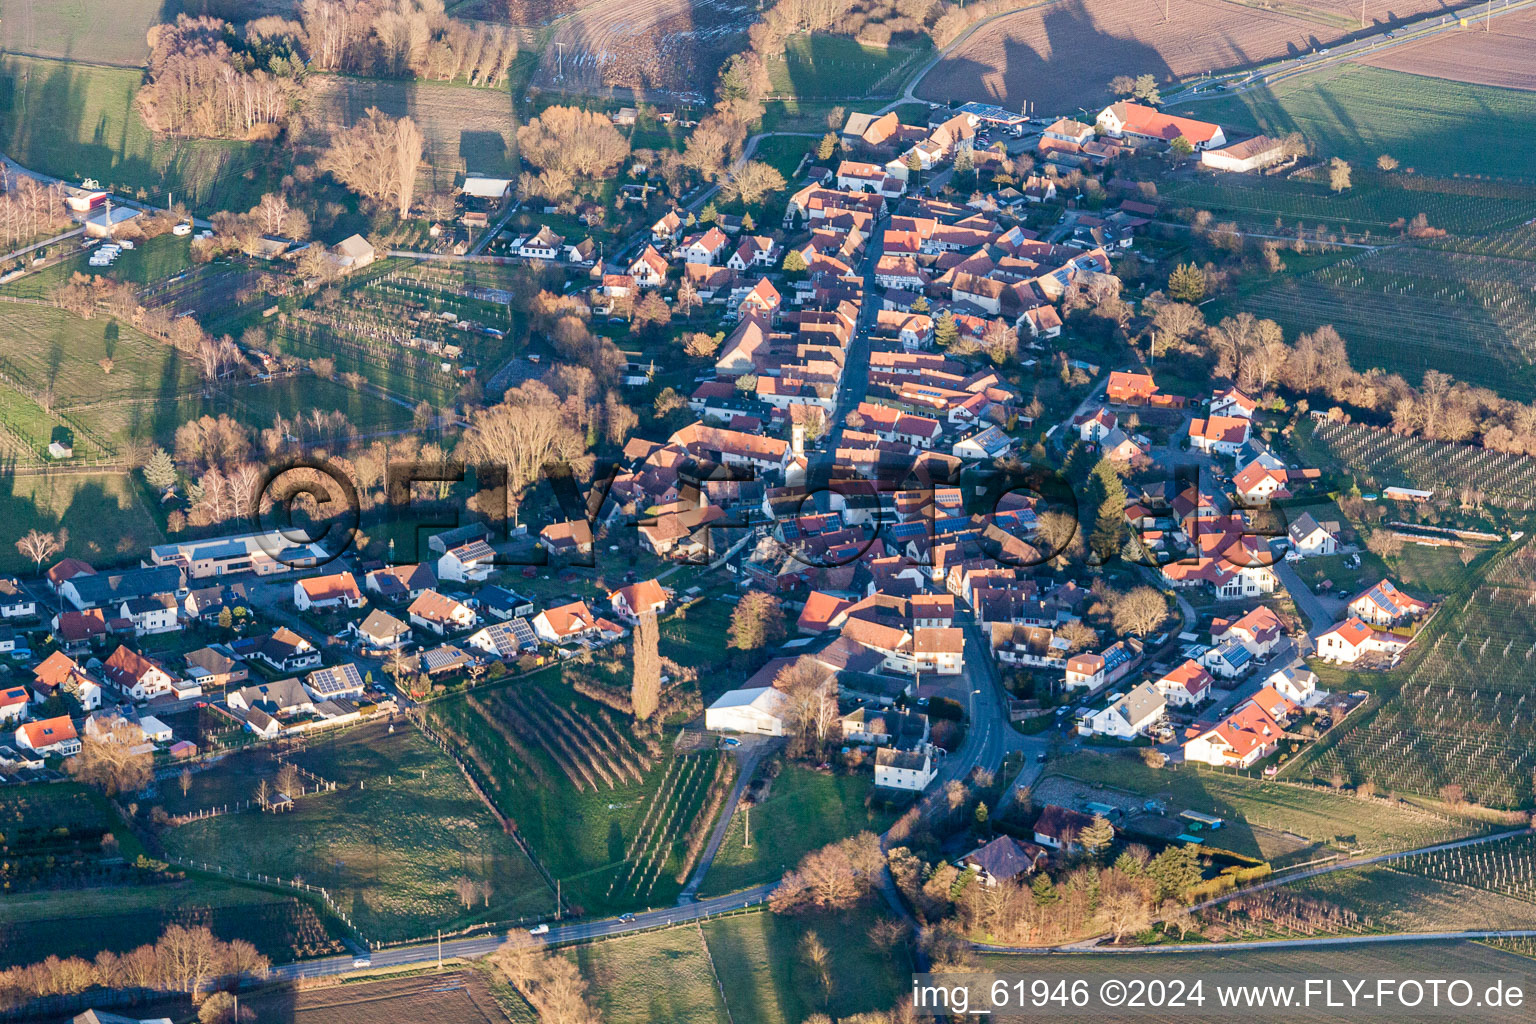 Photographie aérienne de Champs agricoles et surfaces utilisables à Oberhausen dans le département Rhénanie-Palatinat, Allemagne